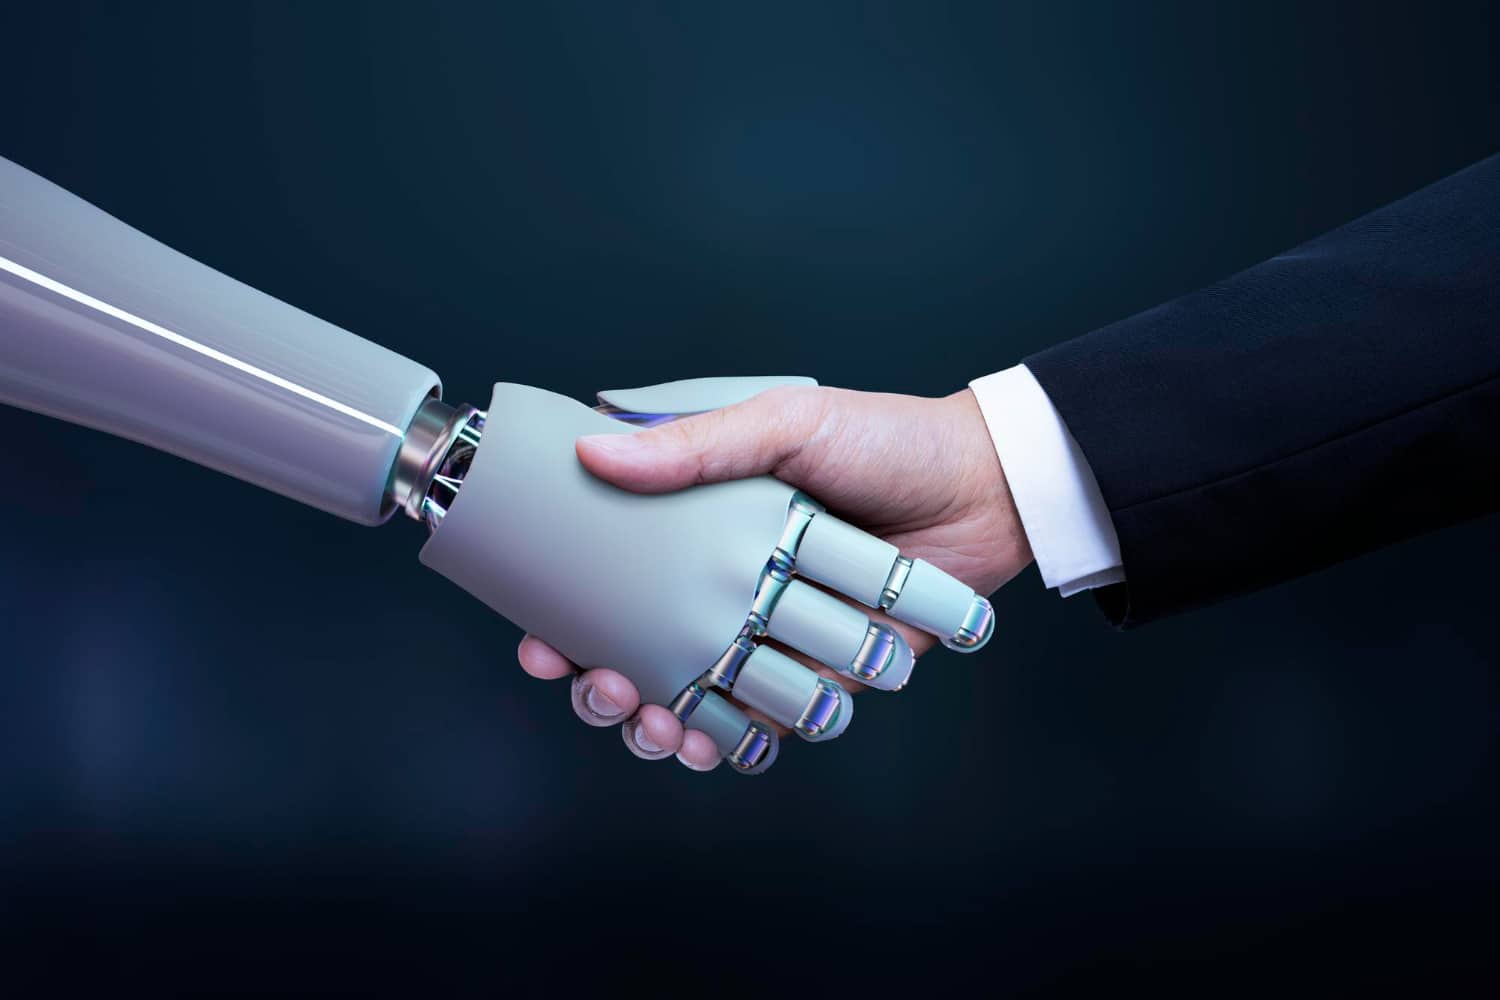 Deux personnes se serrant la main, celle de gauche étant un robot représentant l'intelligence artificielle, celle de droite une main humaine en costume représentant l'humanité et les entreprises.